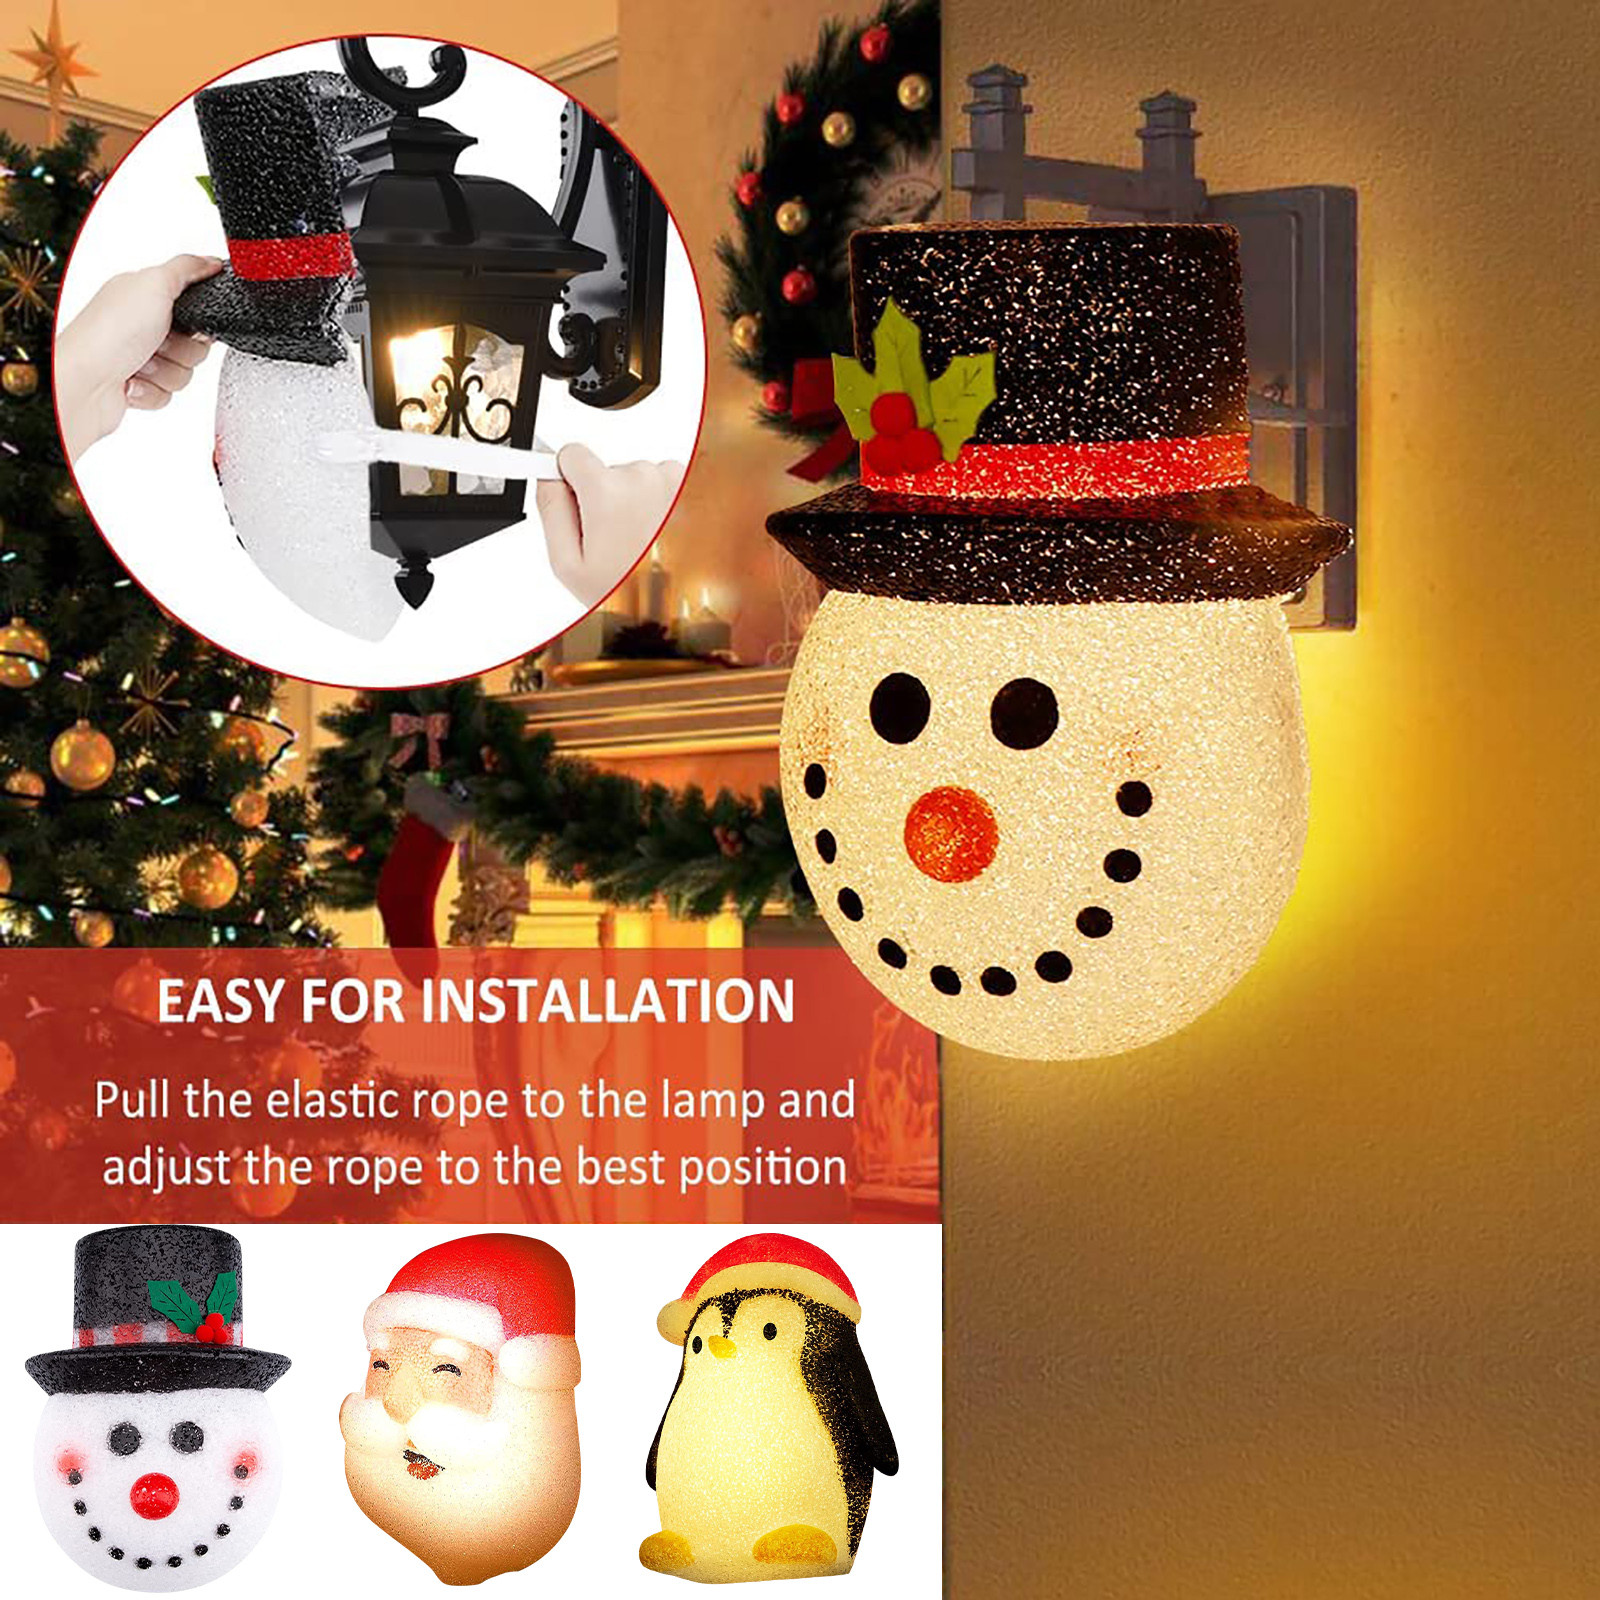 Christmas-Snowman-Lampshade-Corridor-Wall-Lamp-Decoration-Outside-Xmas-Lamp-Shade-Holiday-Christmas--1918460-1